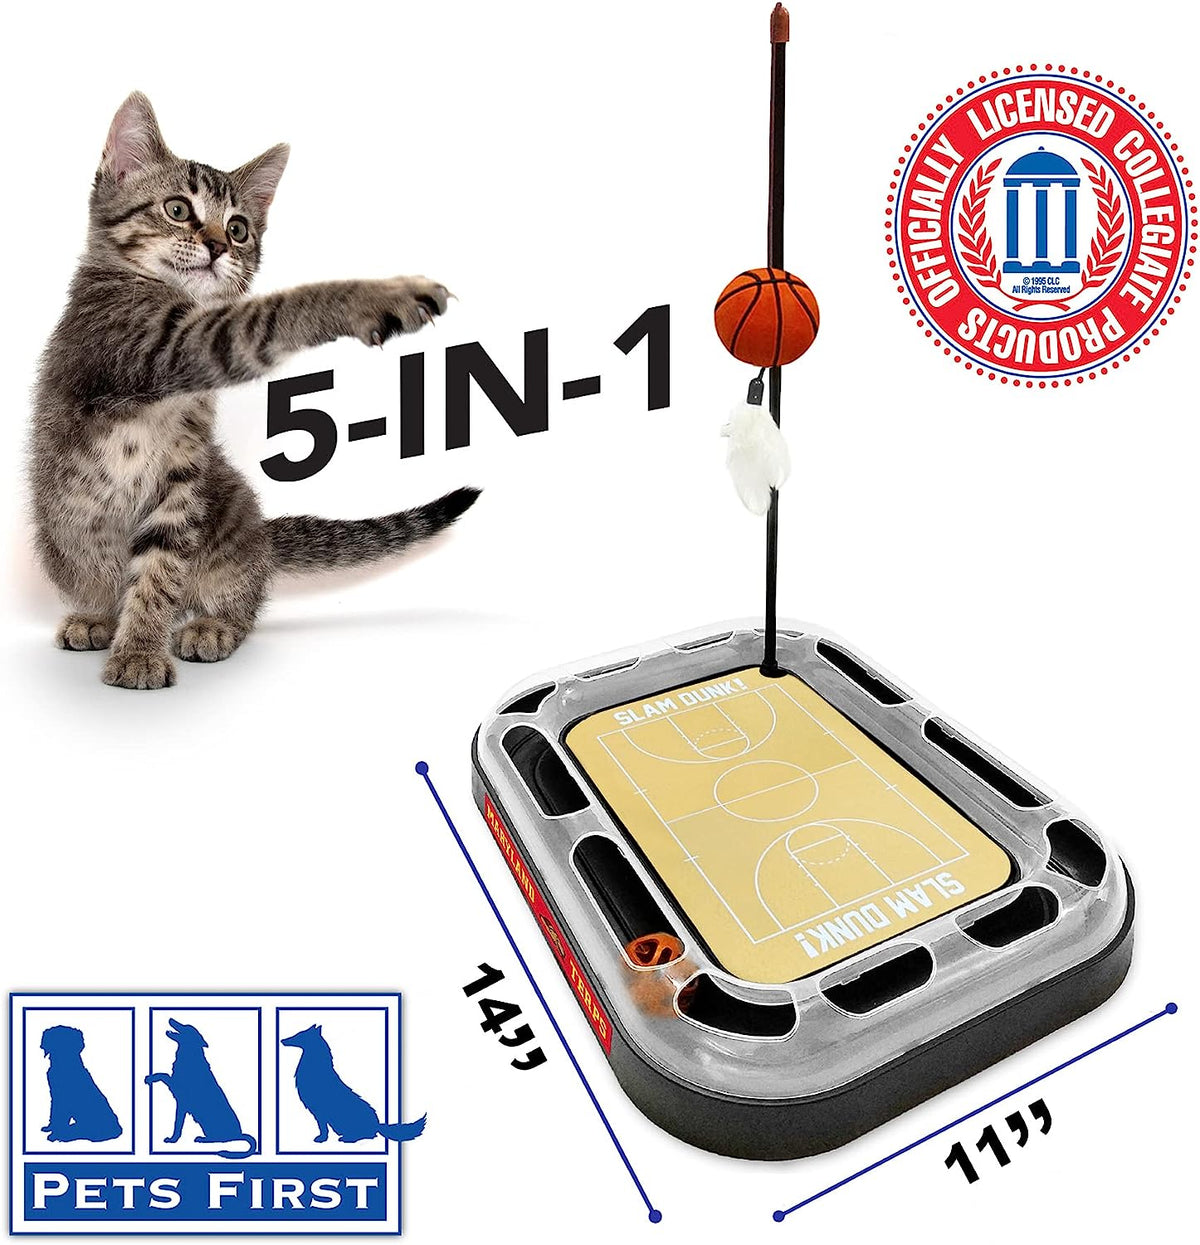 MD Terrapins Basketball Cat Scratcher Toy